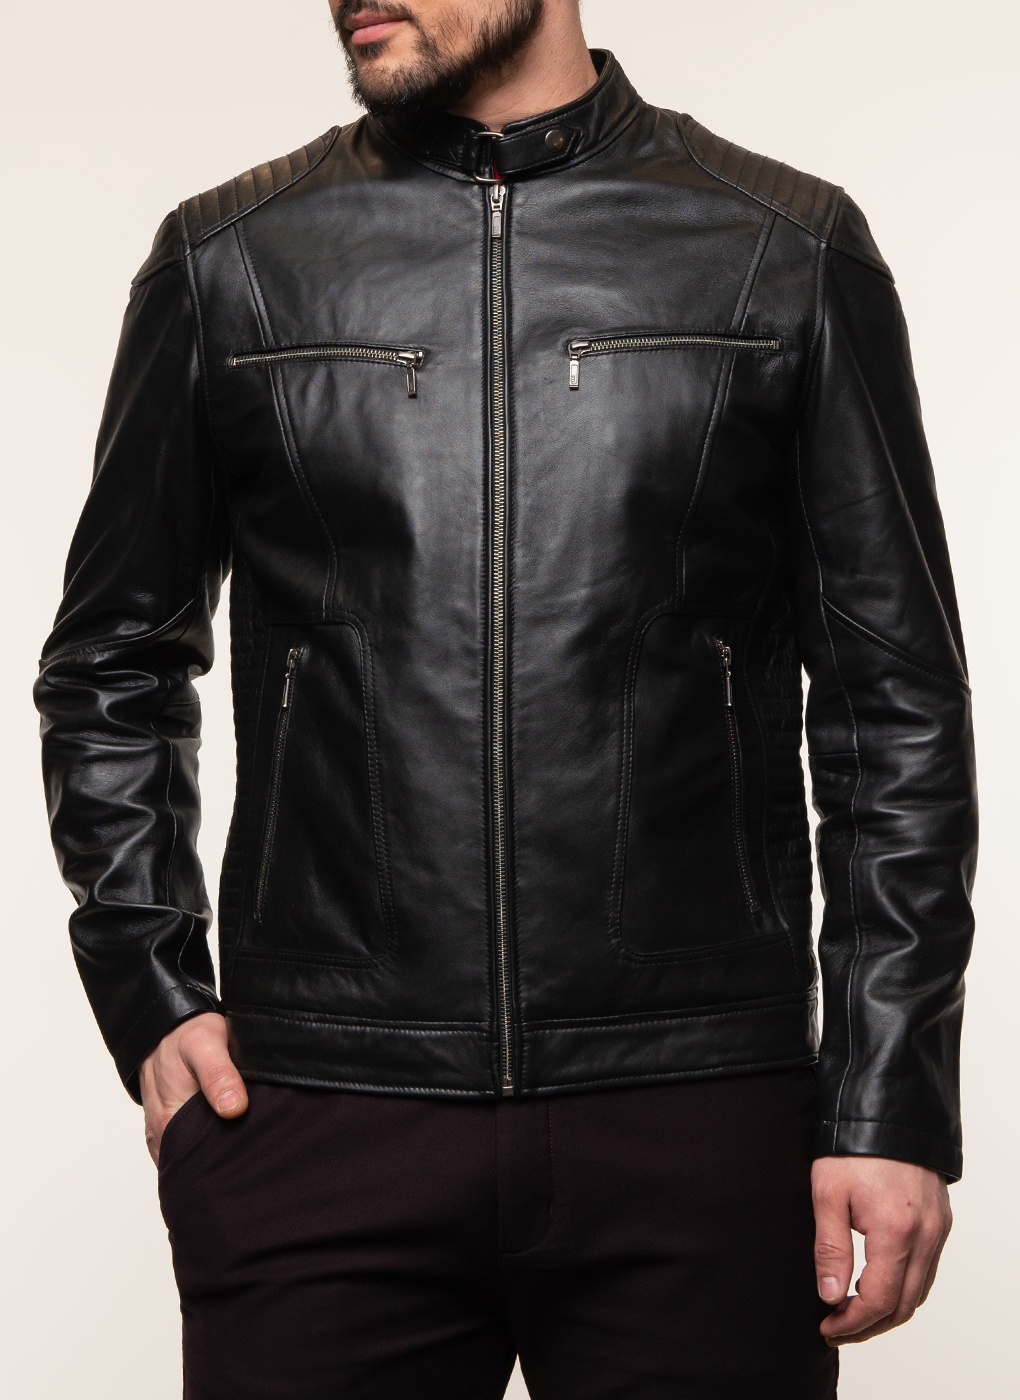 Кожаная куртка мужская Каляев 62648 черная 56 RU